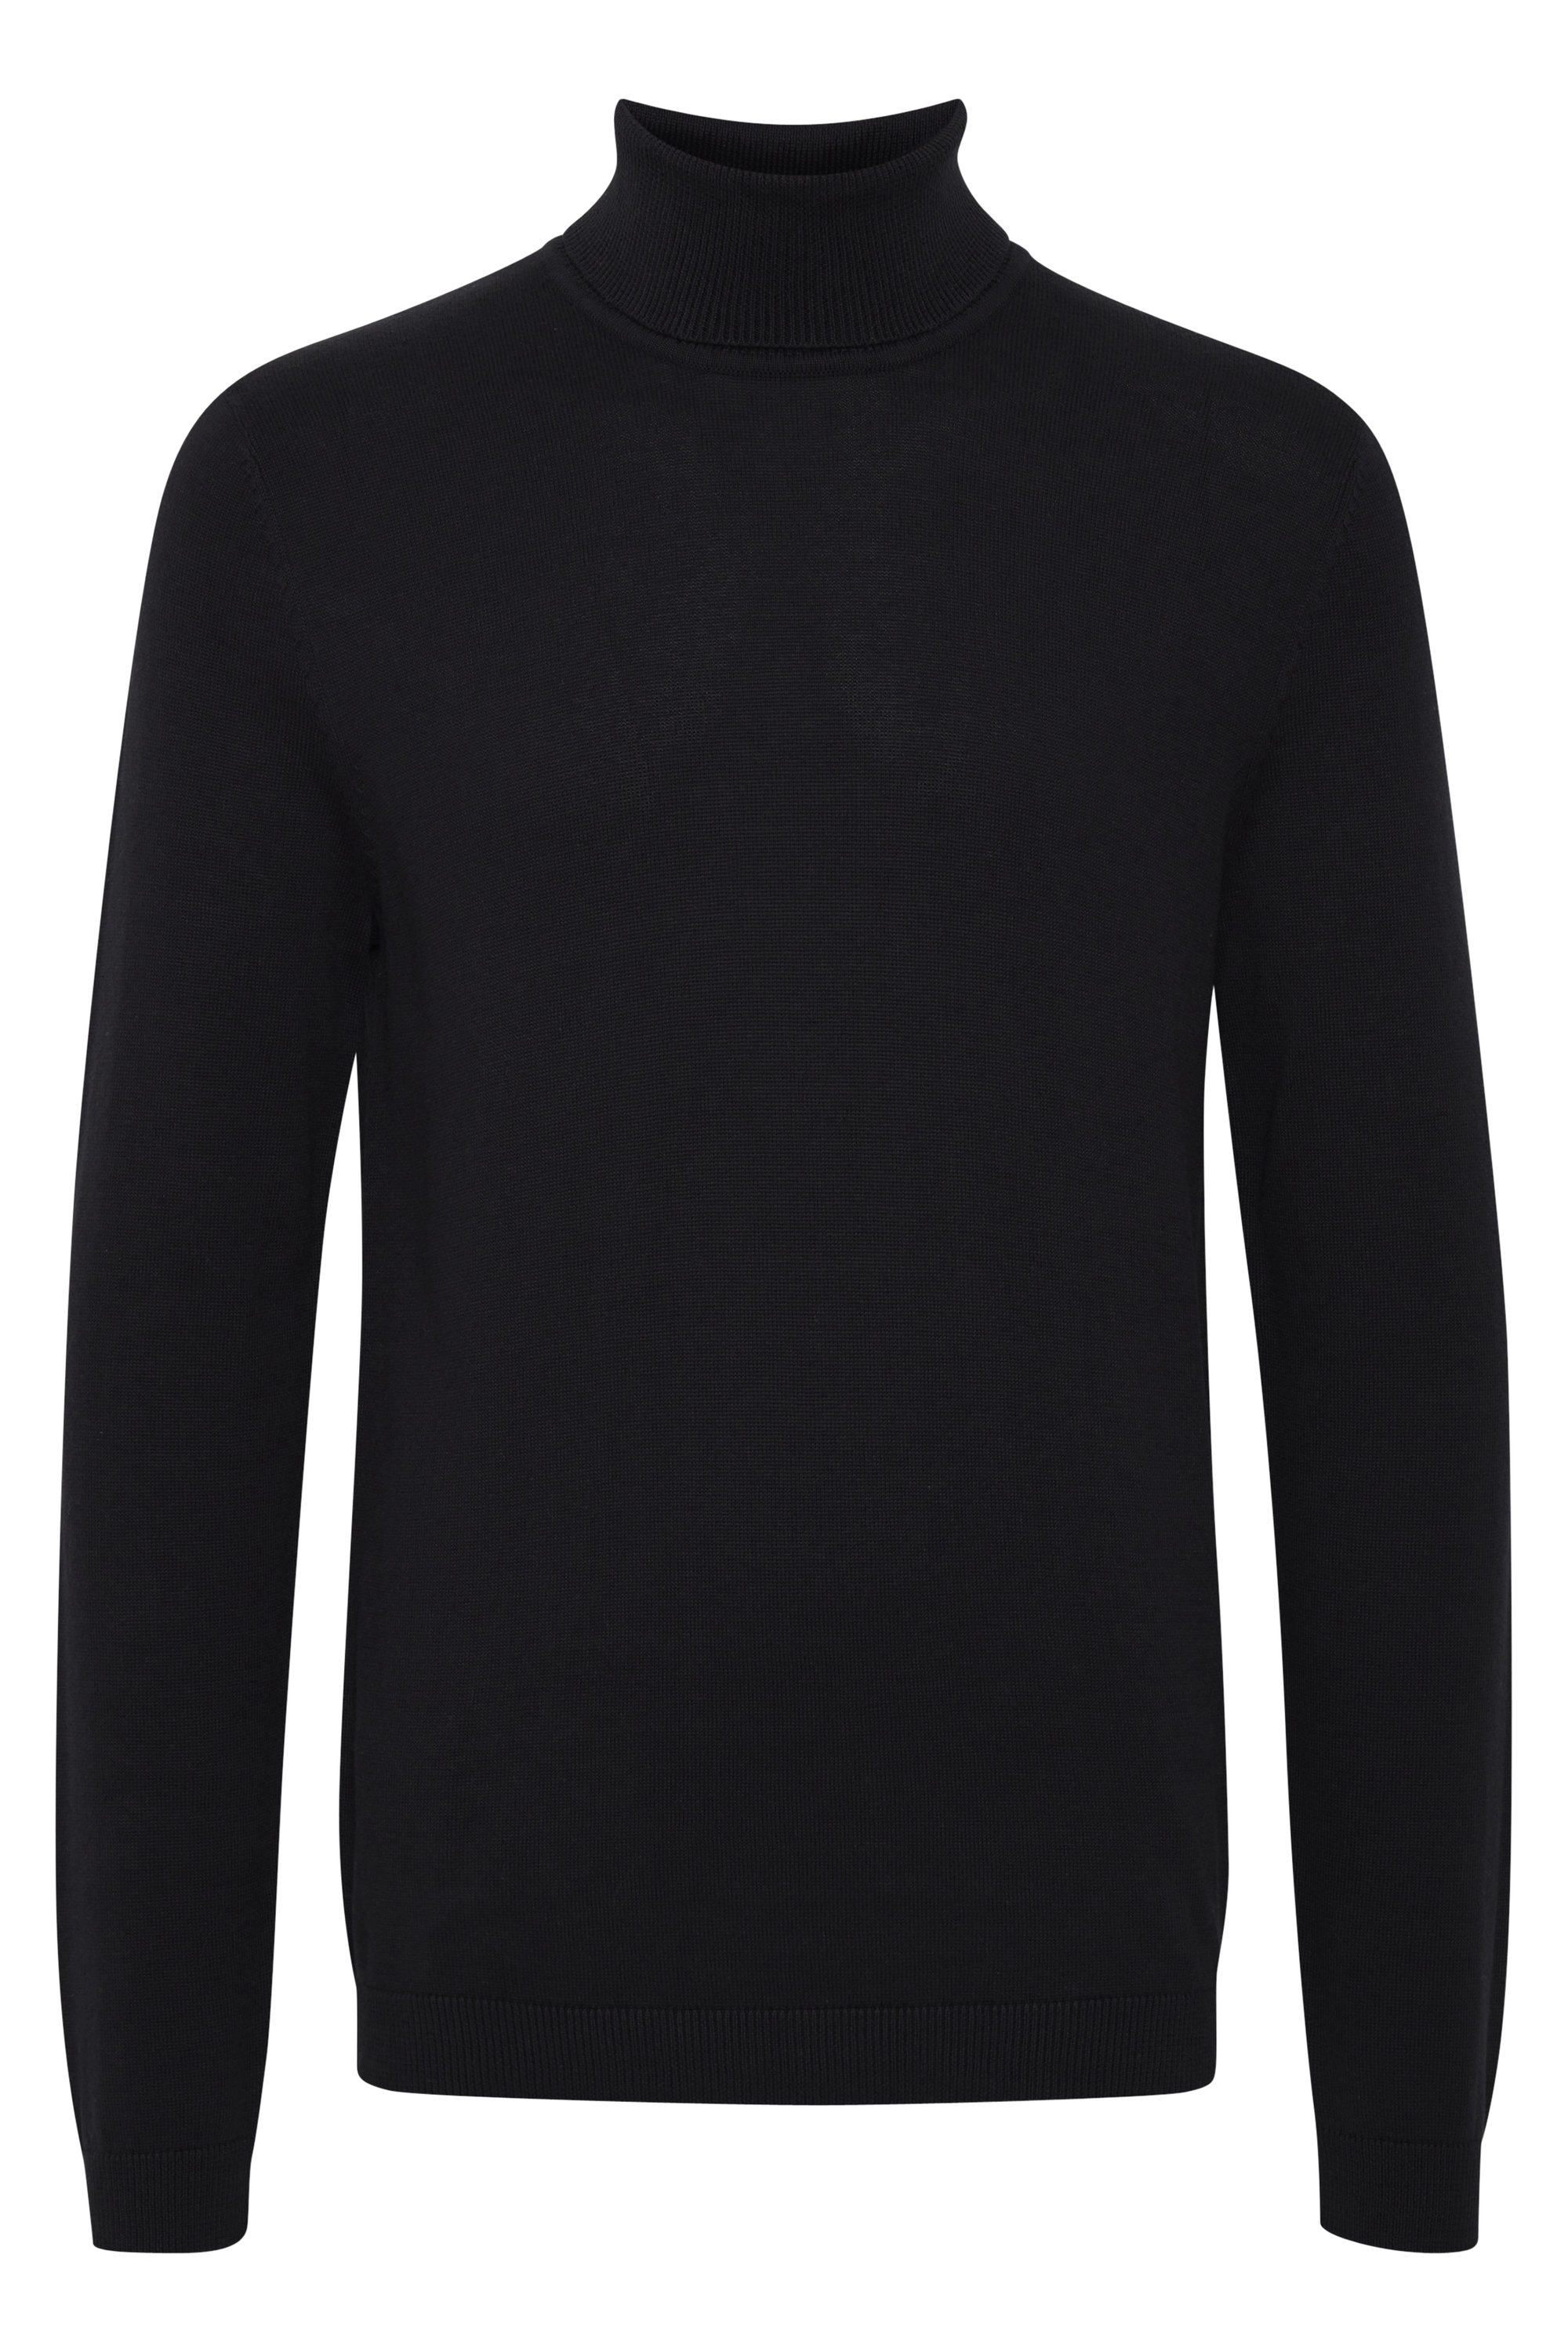 Mężczyźni Odzież  Solid Sweter w kolorze Czarnym 